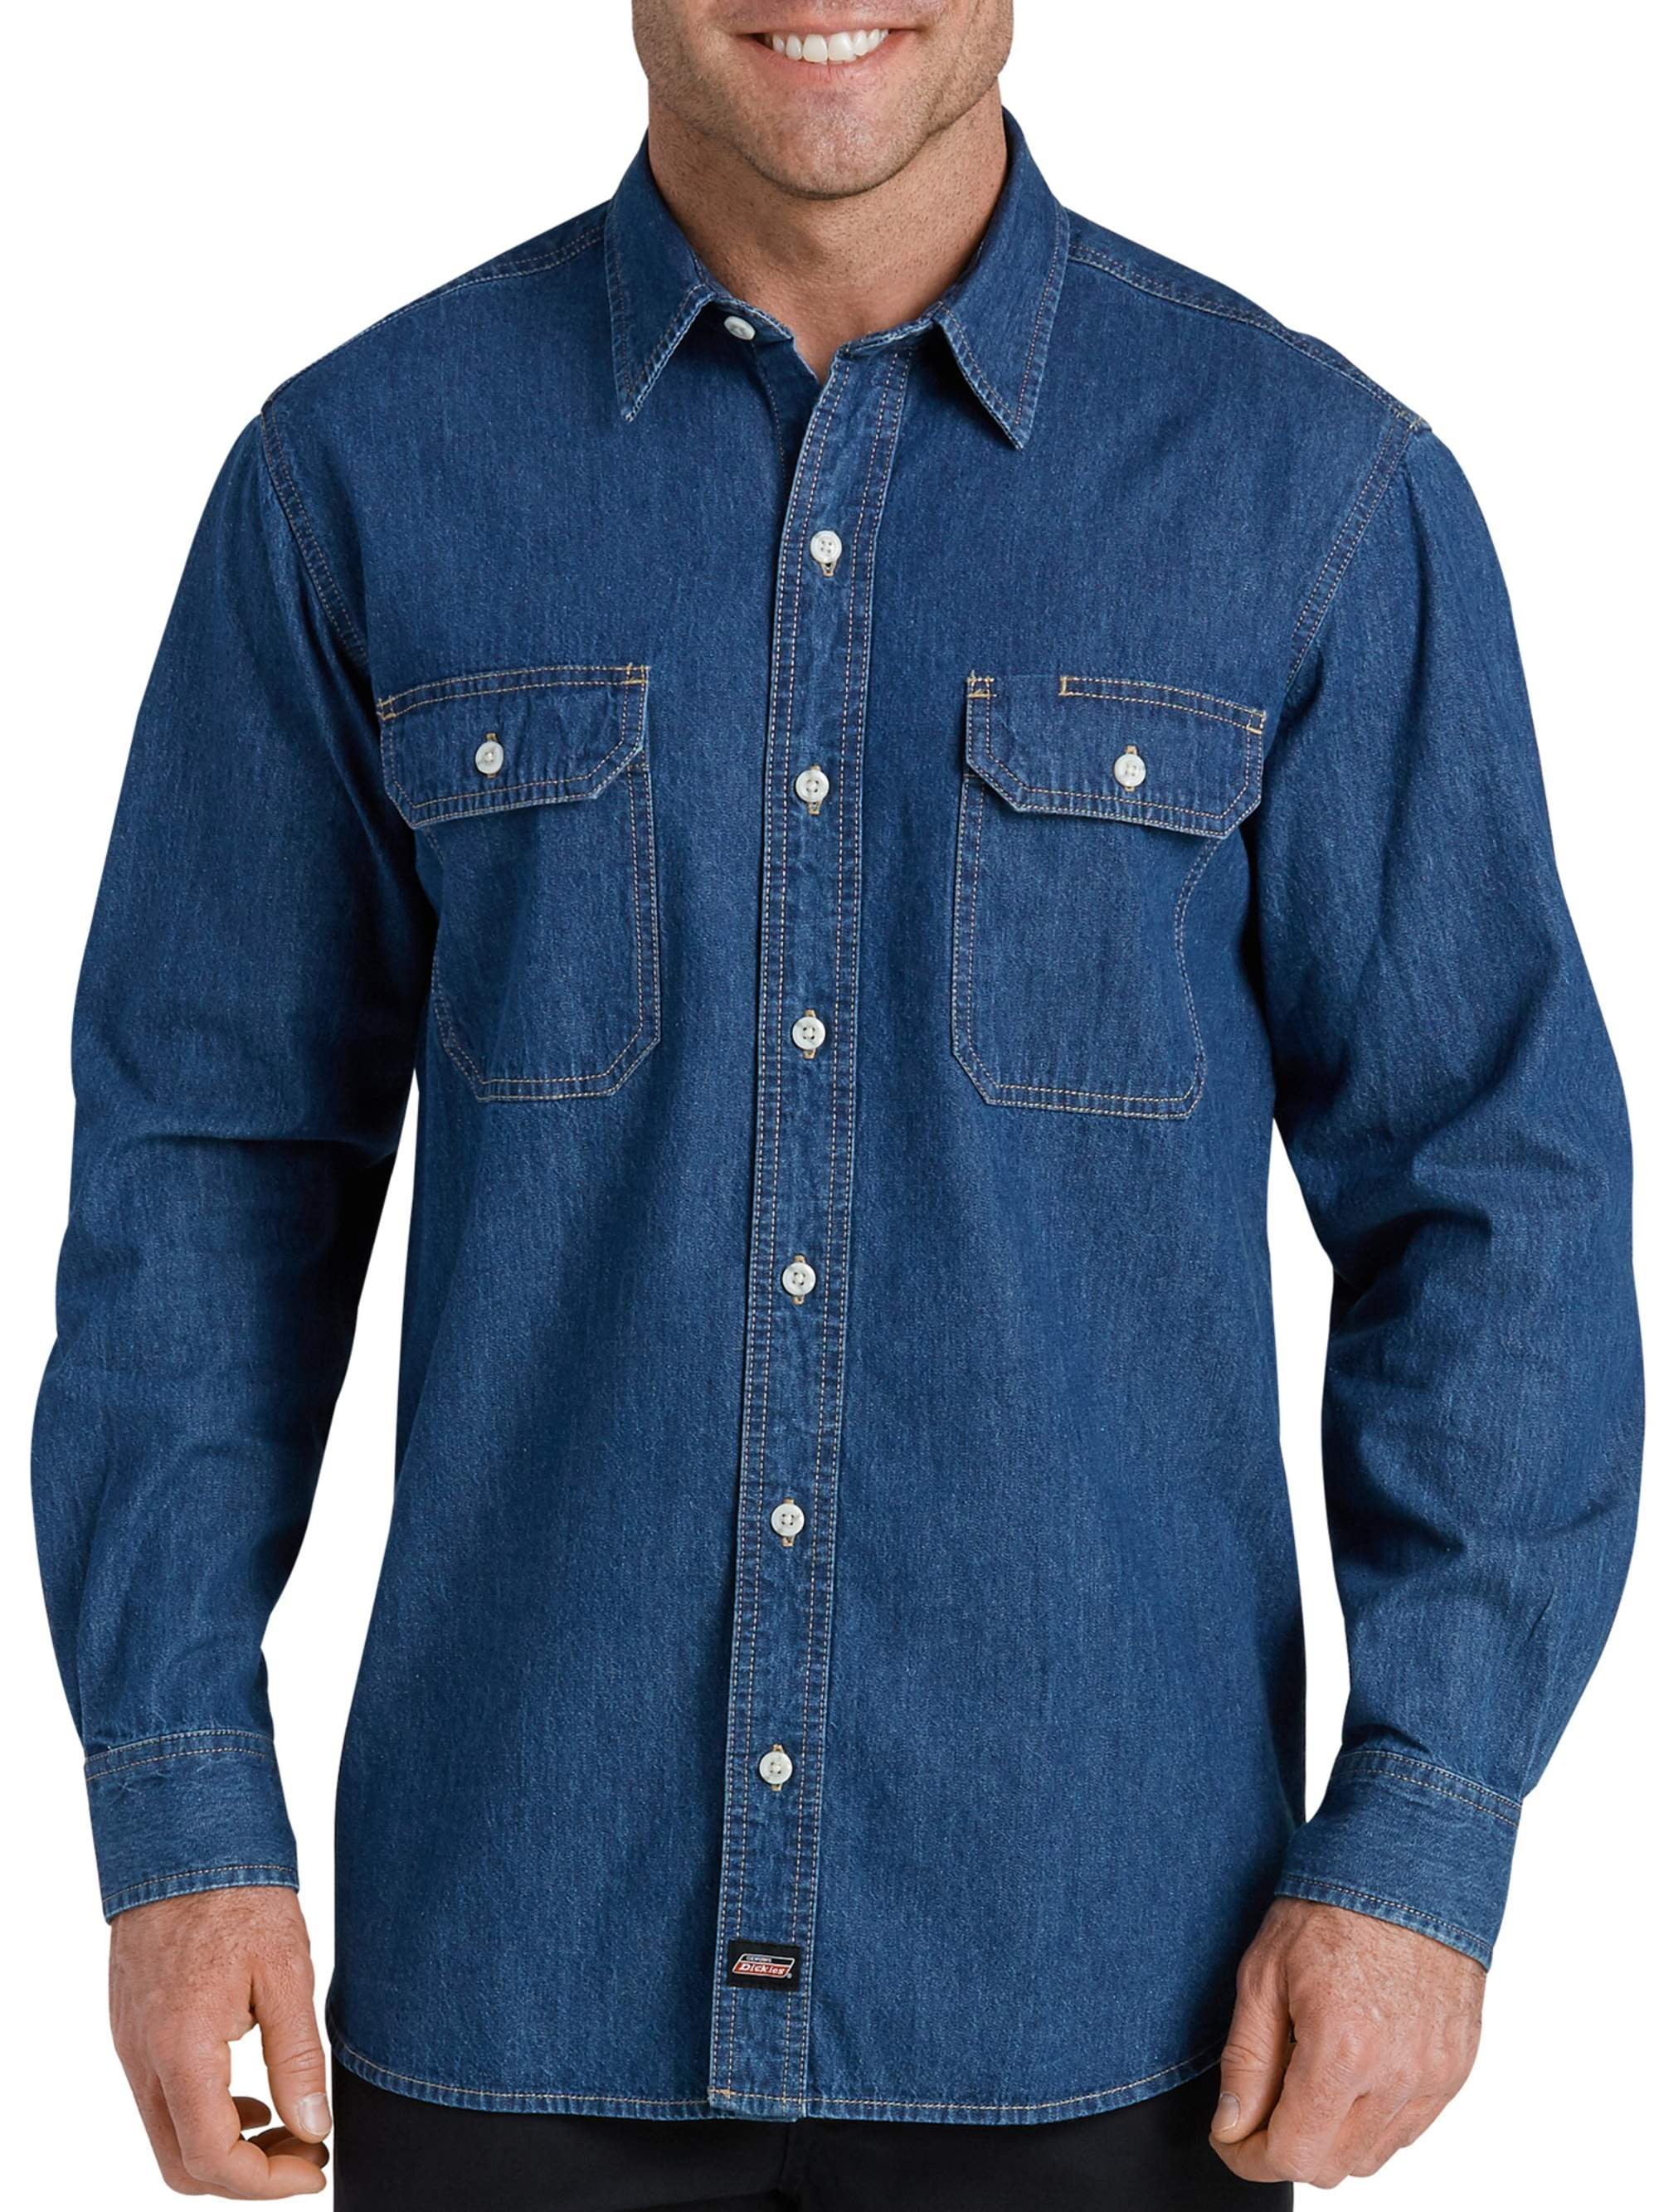 What To Wear With Denim Shirt – 5 Classic Denim Shirt Combinations -  Bewakoof Blog